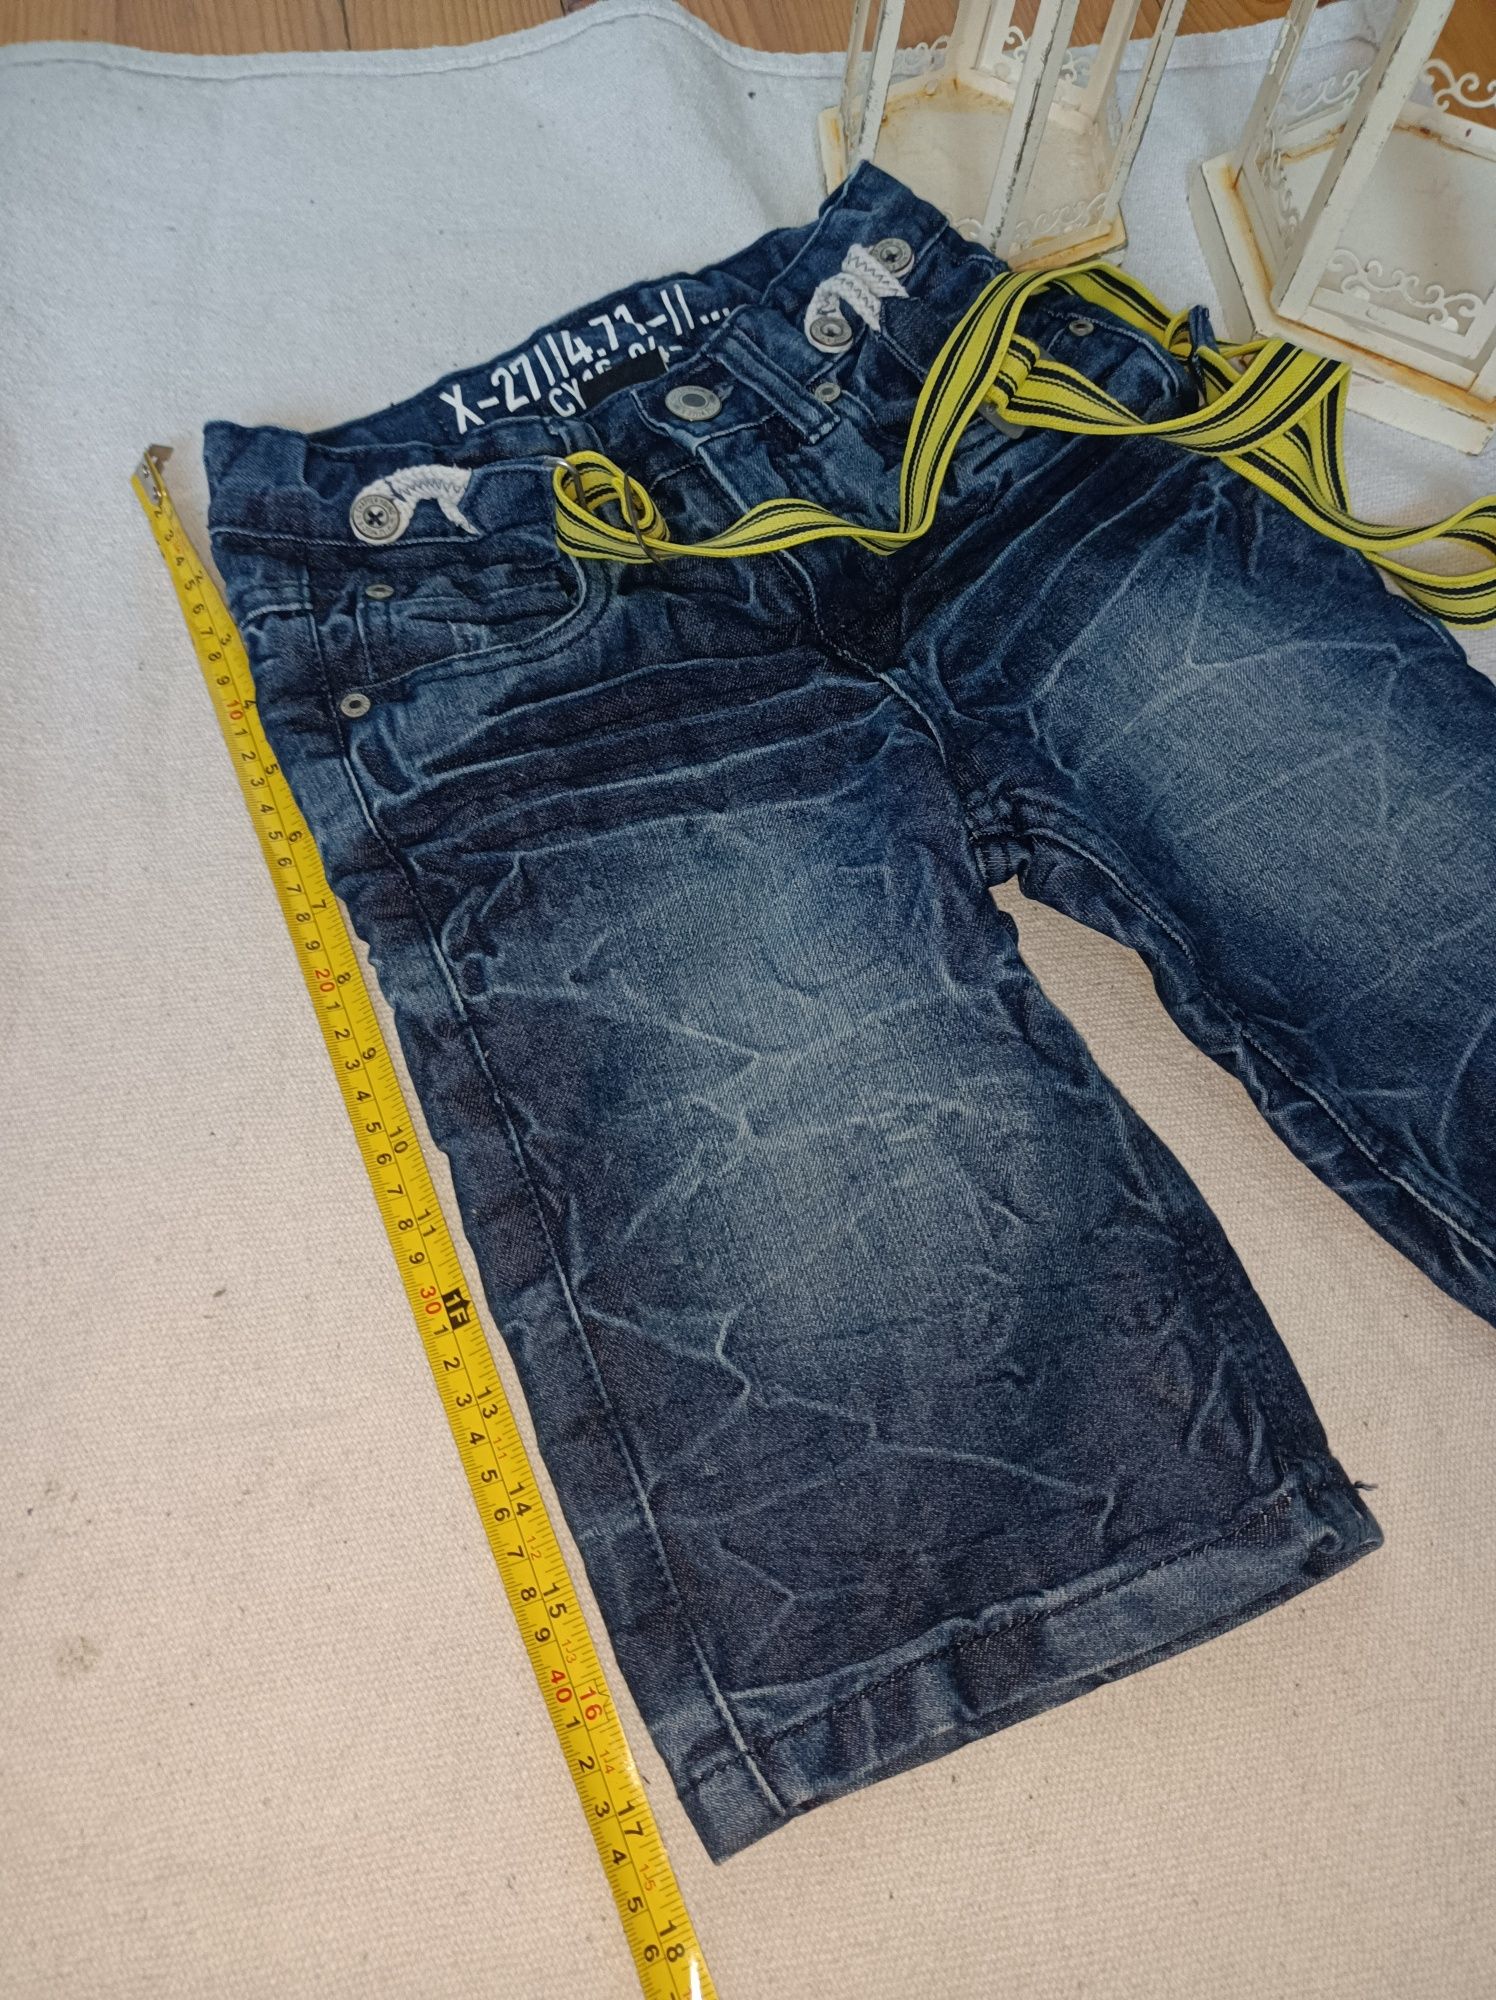 Luksusowe szorty spodenki jeansowe 134 8-9 lat wymiary tanio